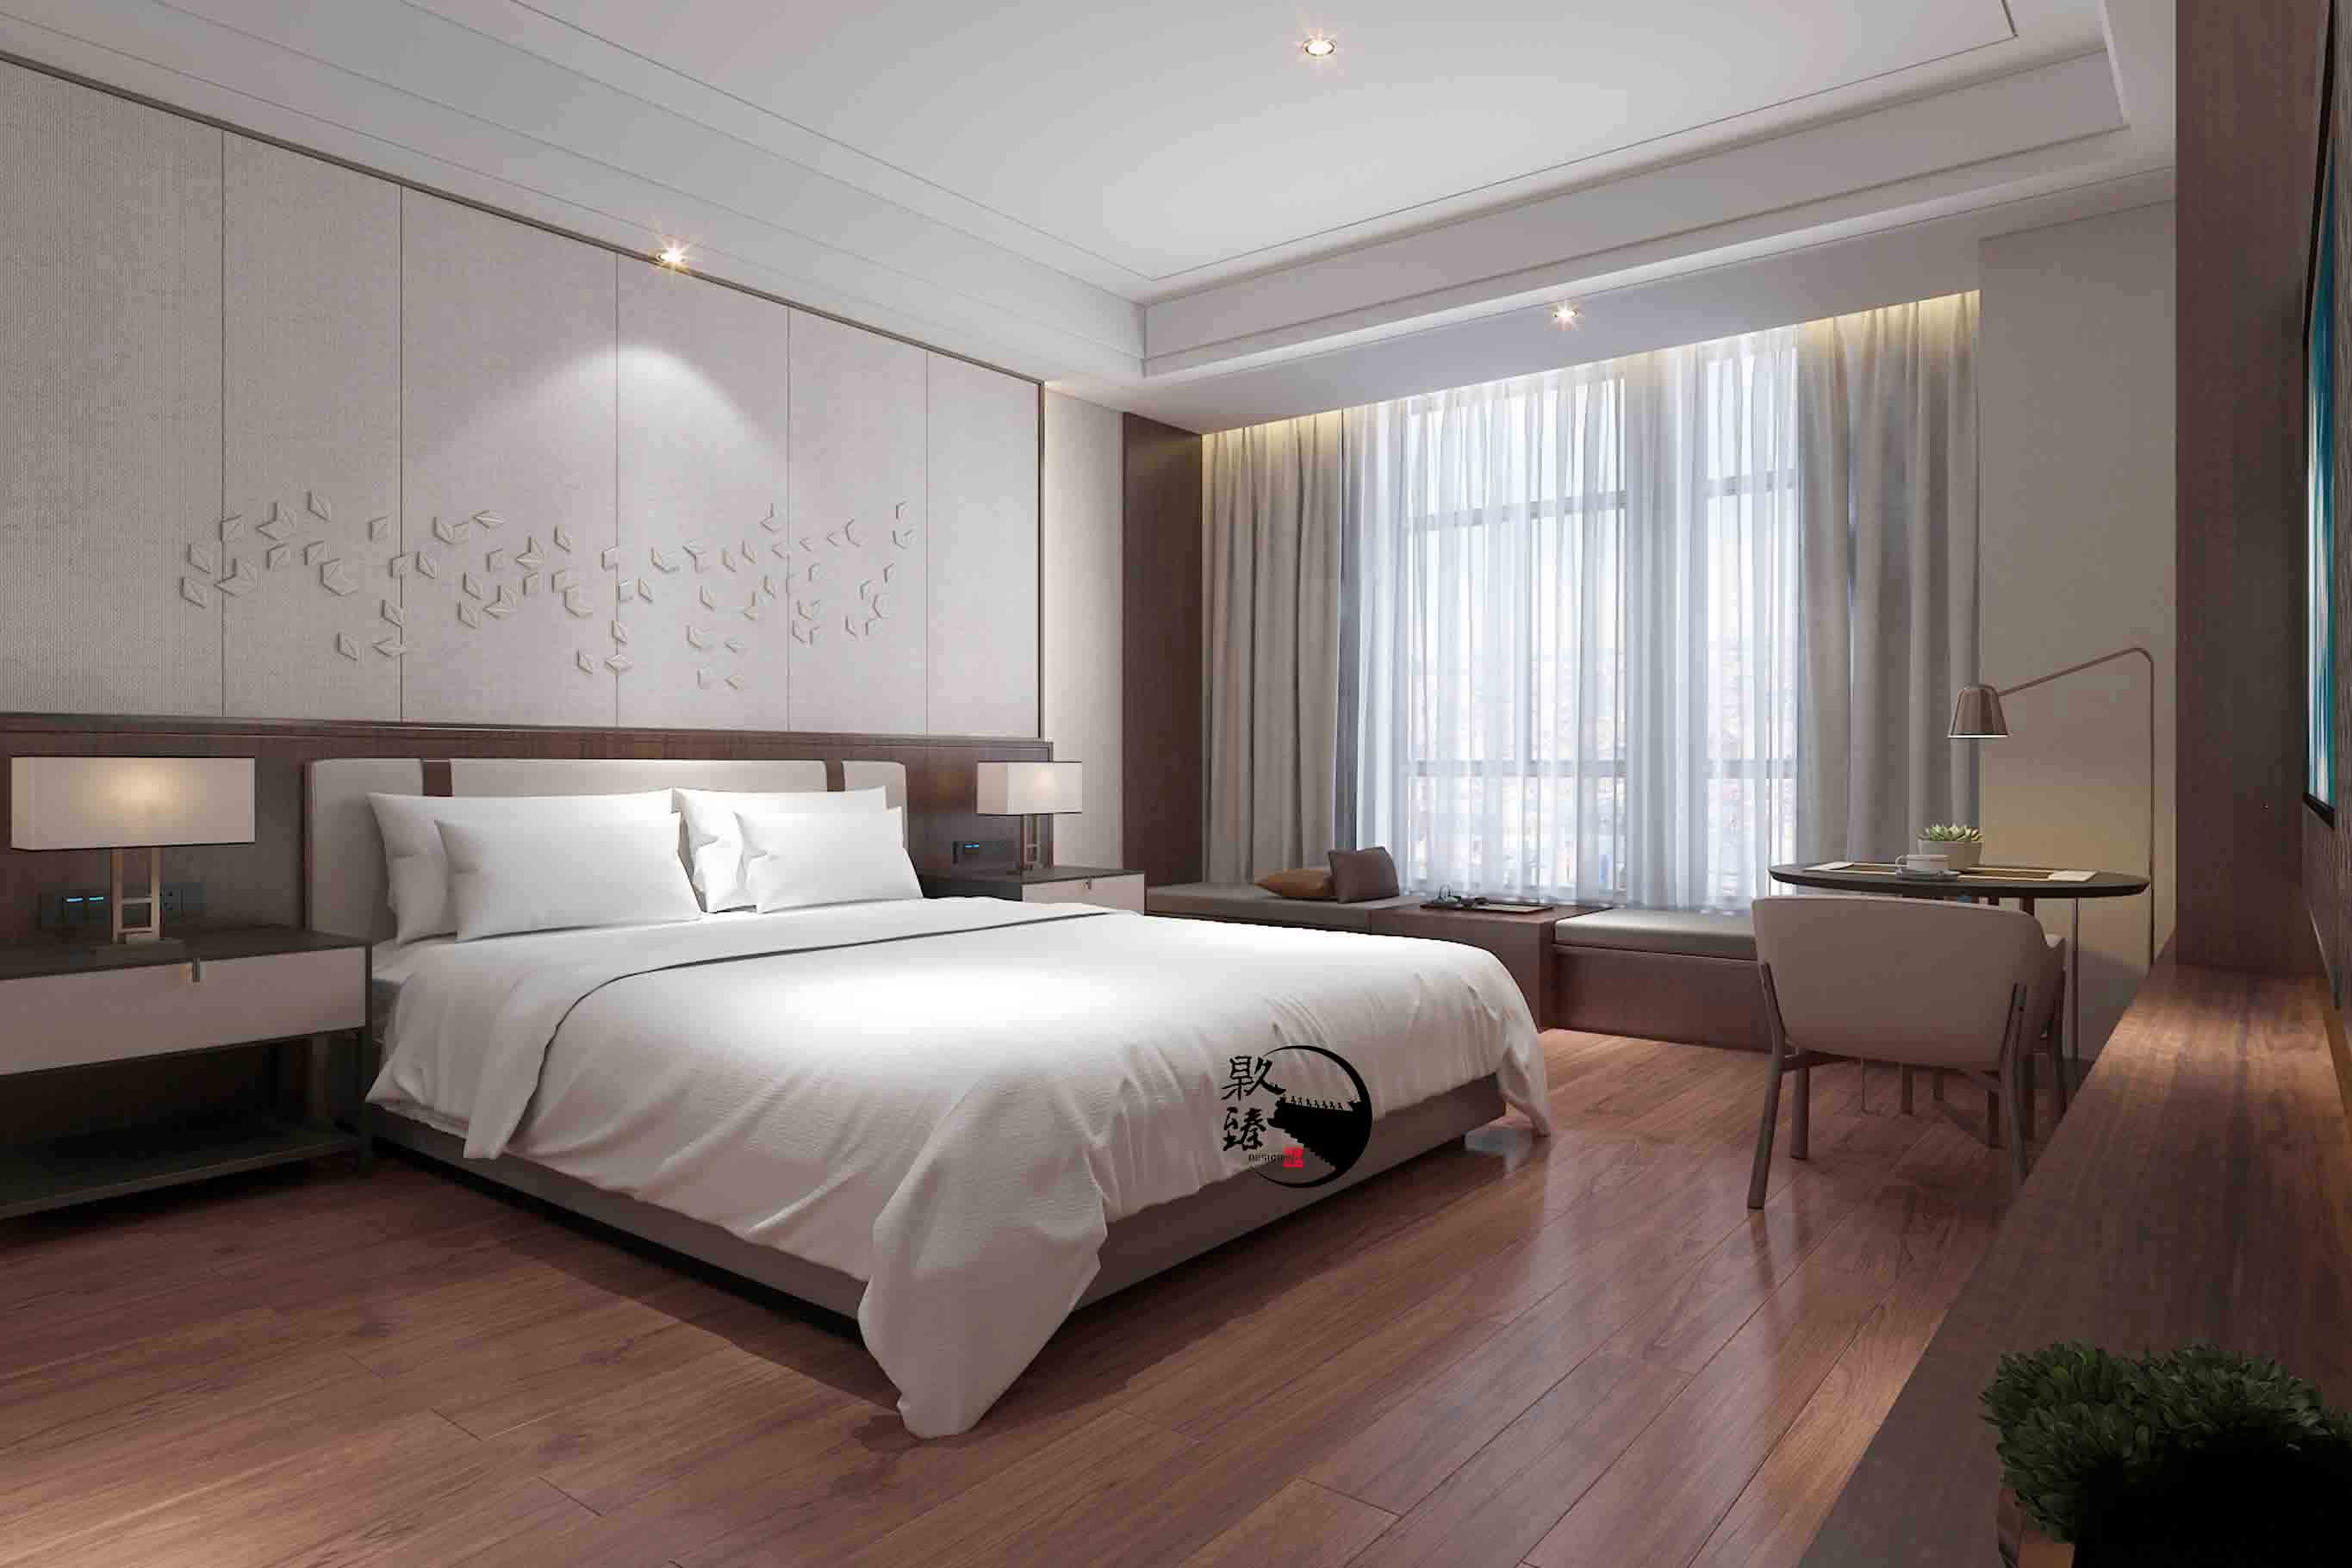 泾源米素酒店设计|满足客户对舒适和安静的需求